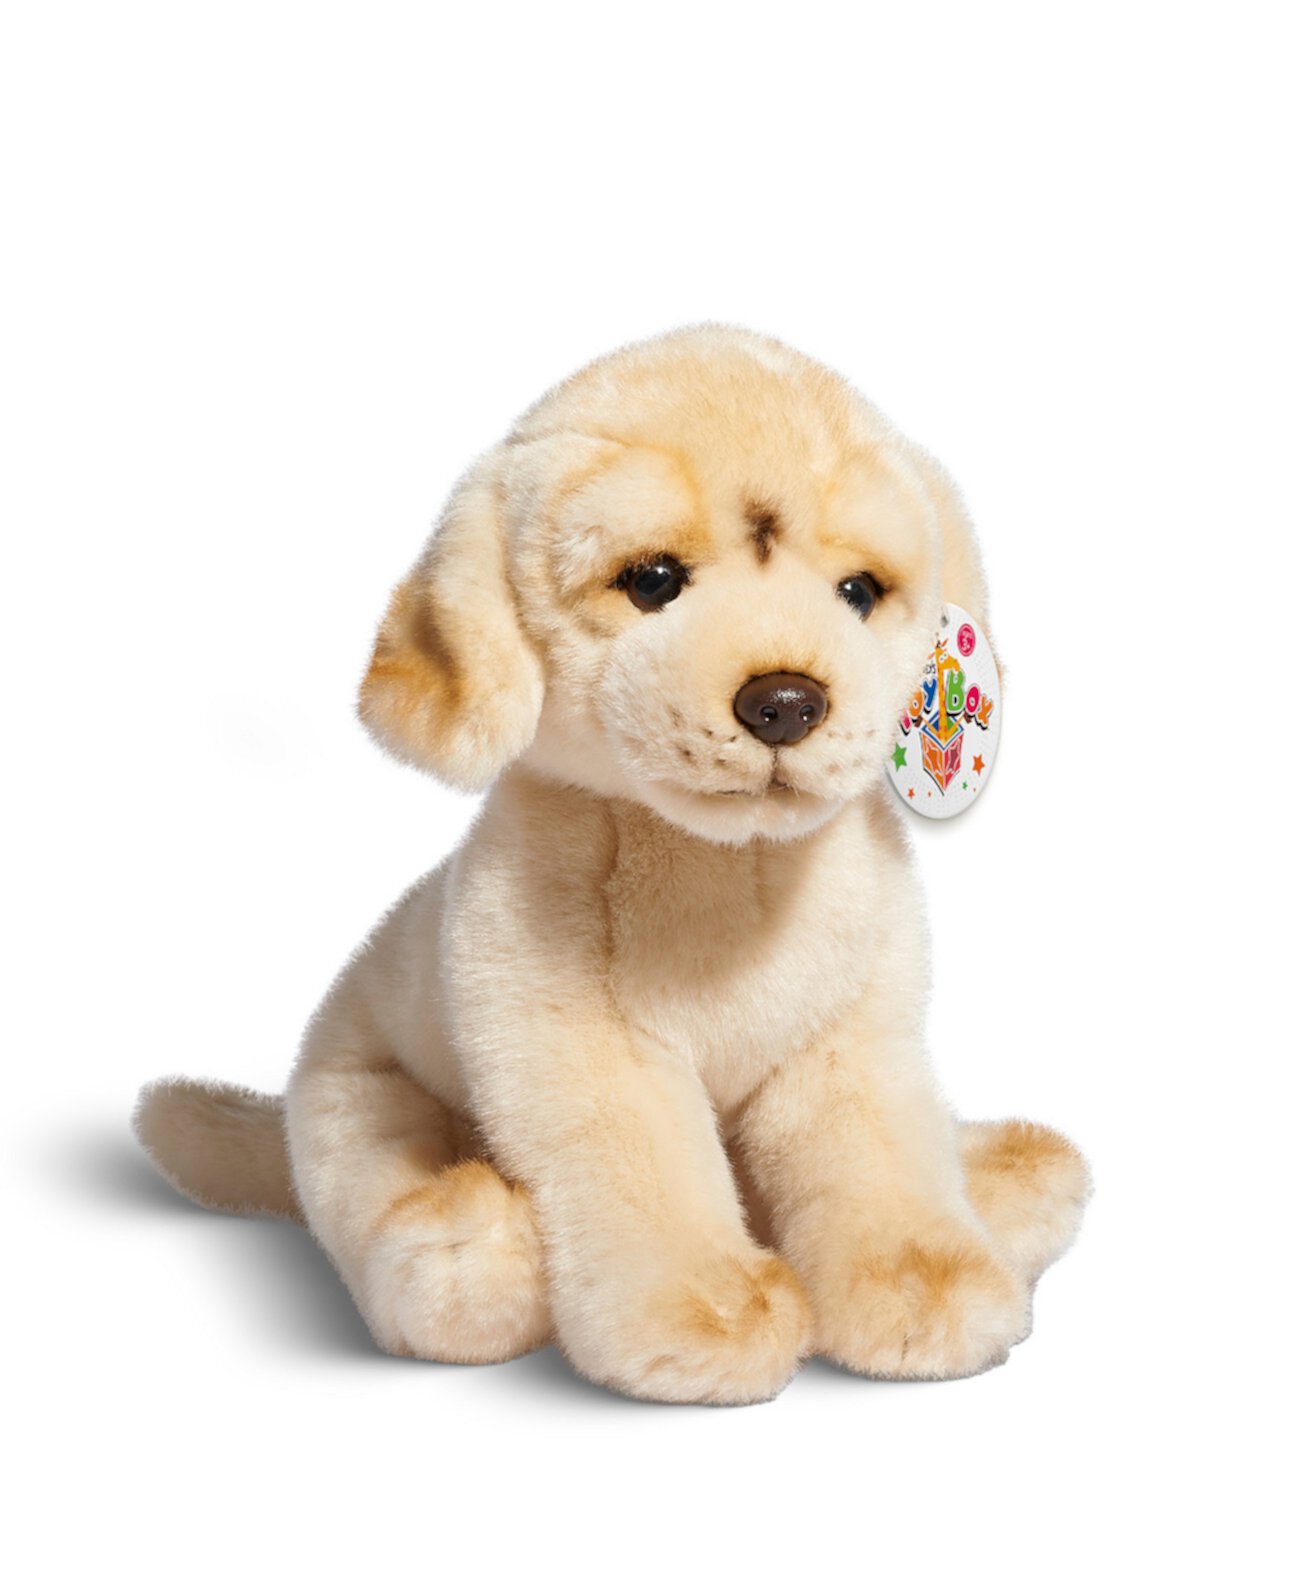 10-дюймовая игрушка-щенок лабрадора, созданная для Macy's Geoffrey's Toy Box